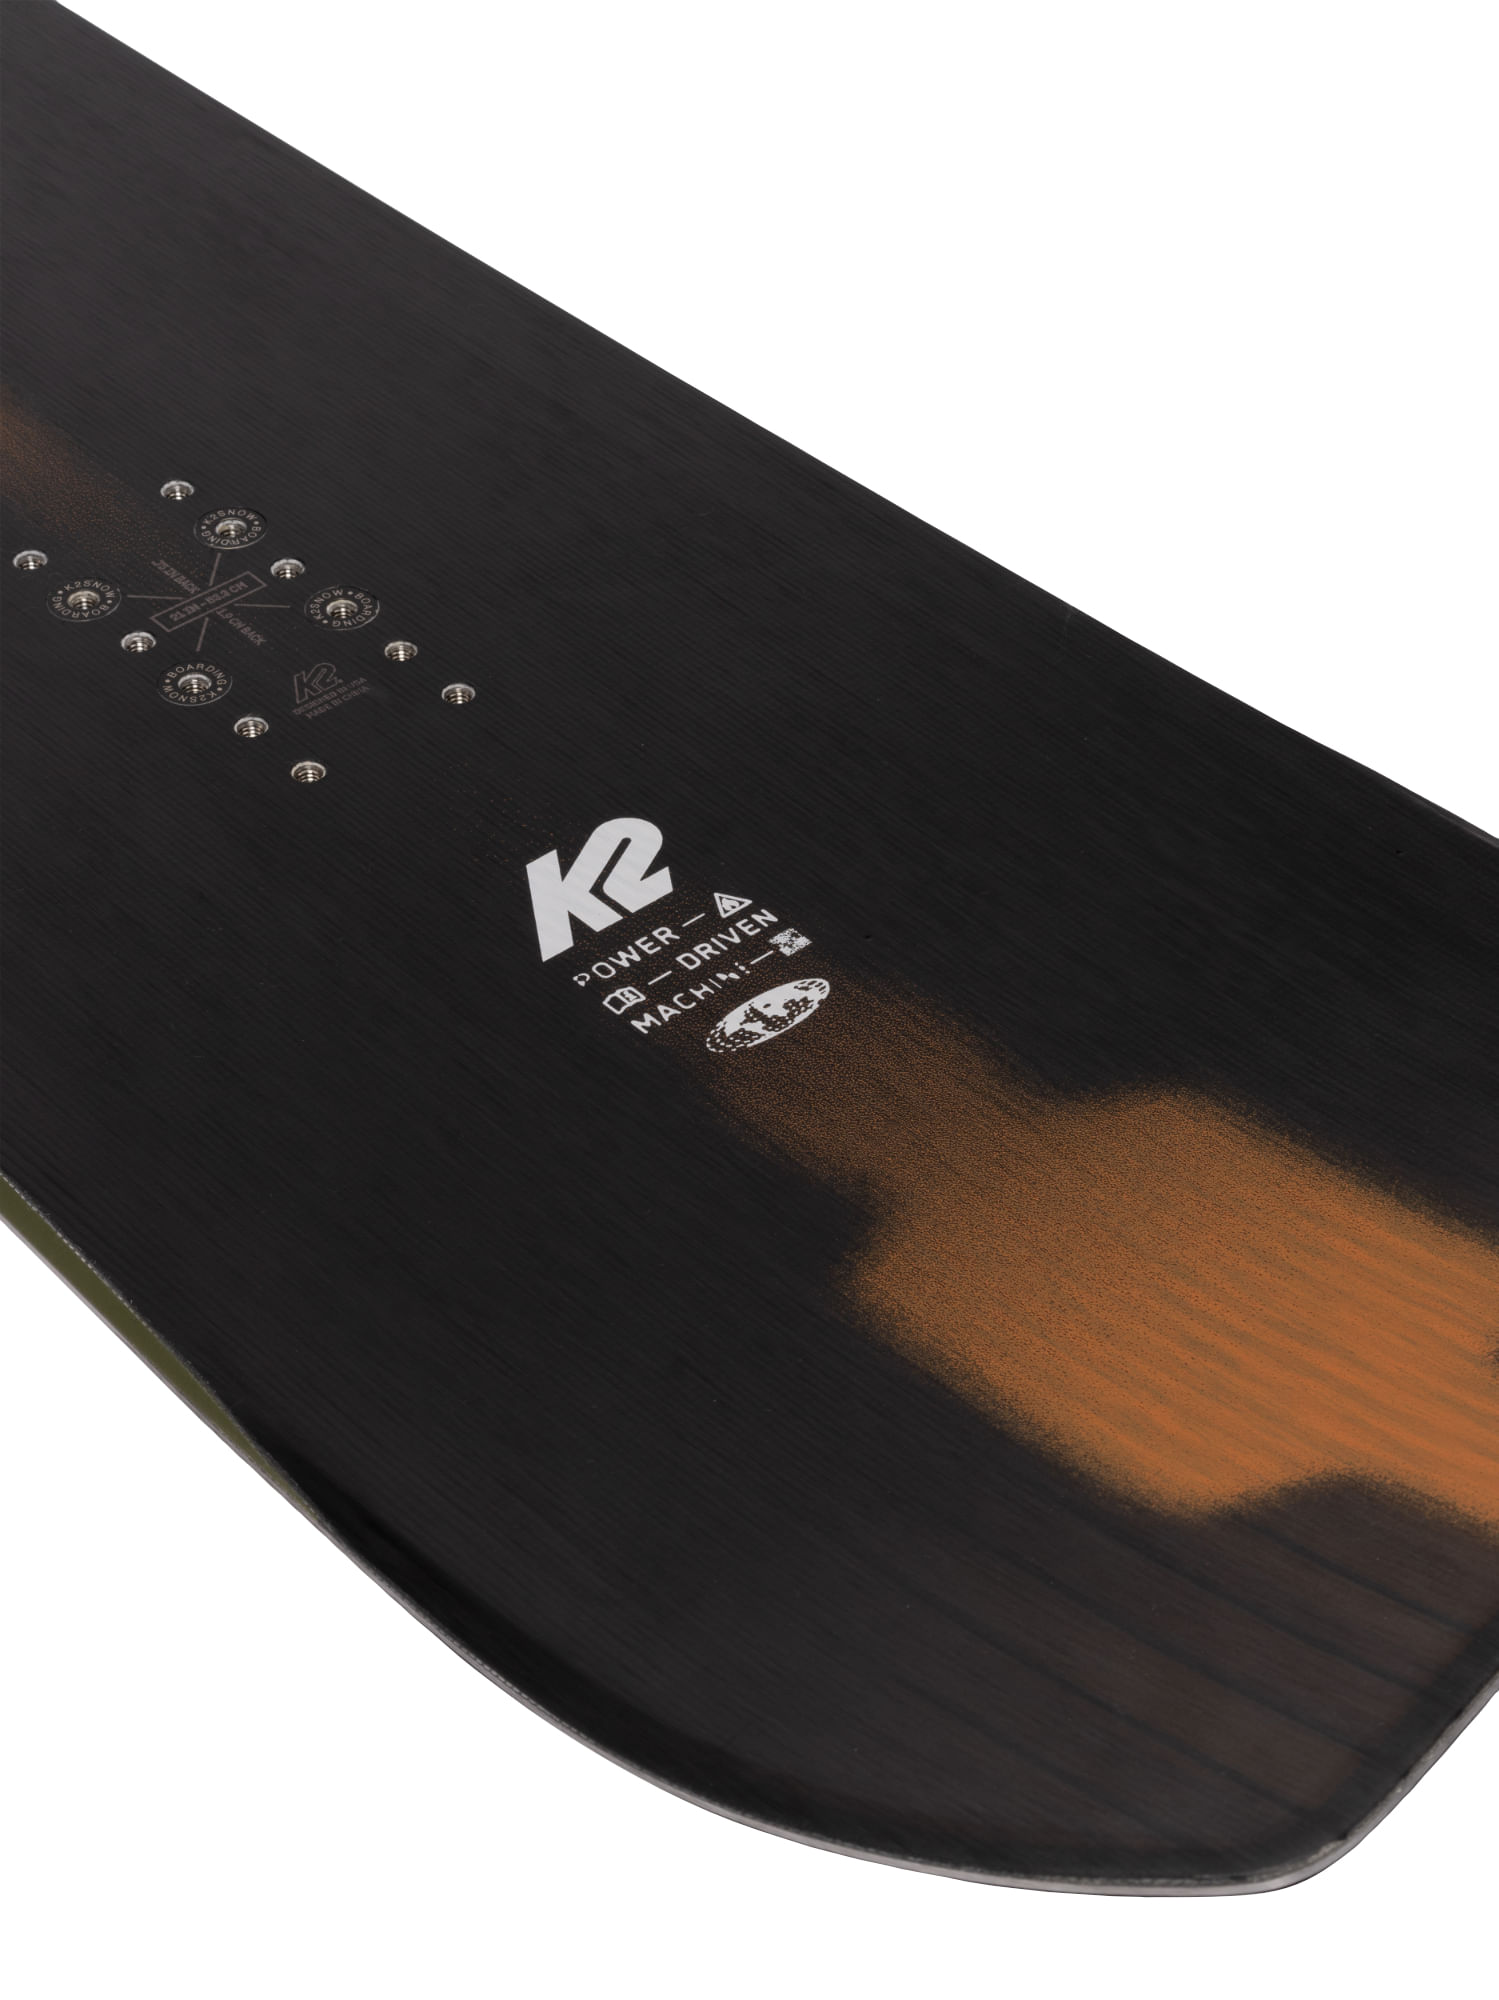 2022 K2 ケーツー EXCAVATOR エクスカベイター 21-22 ボード板 スノーボード 超人気